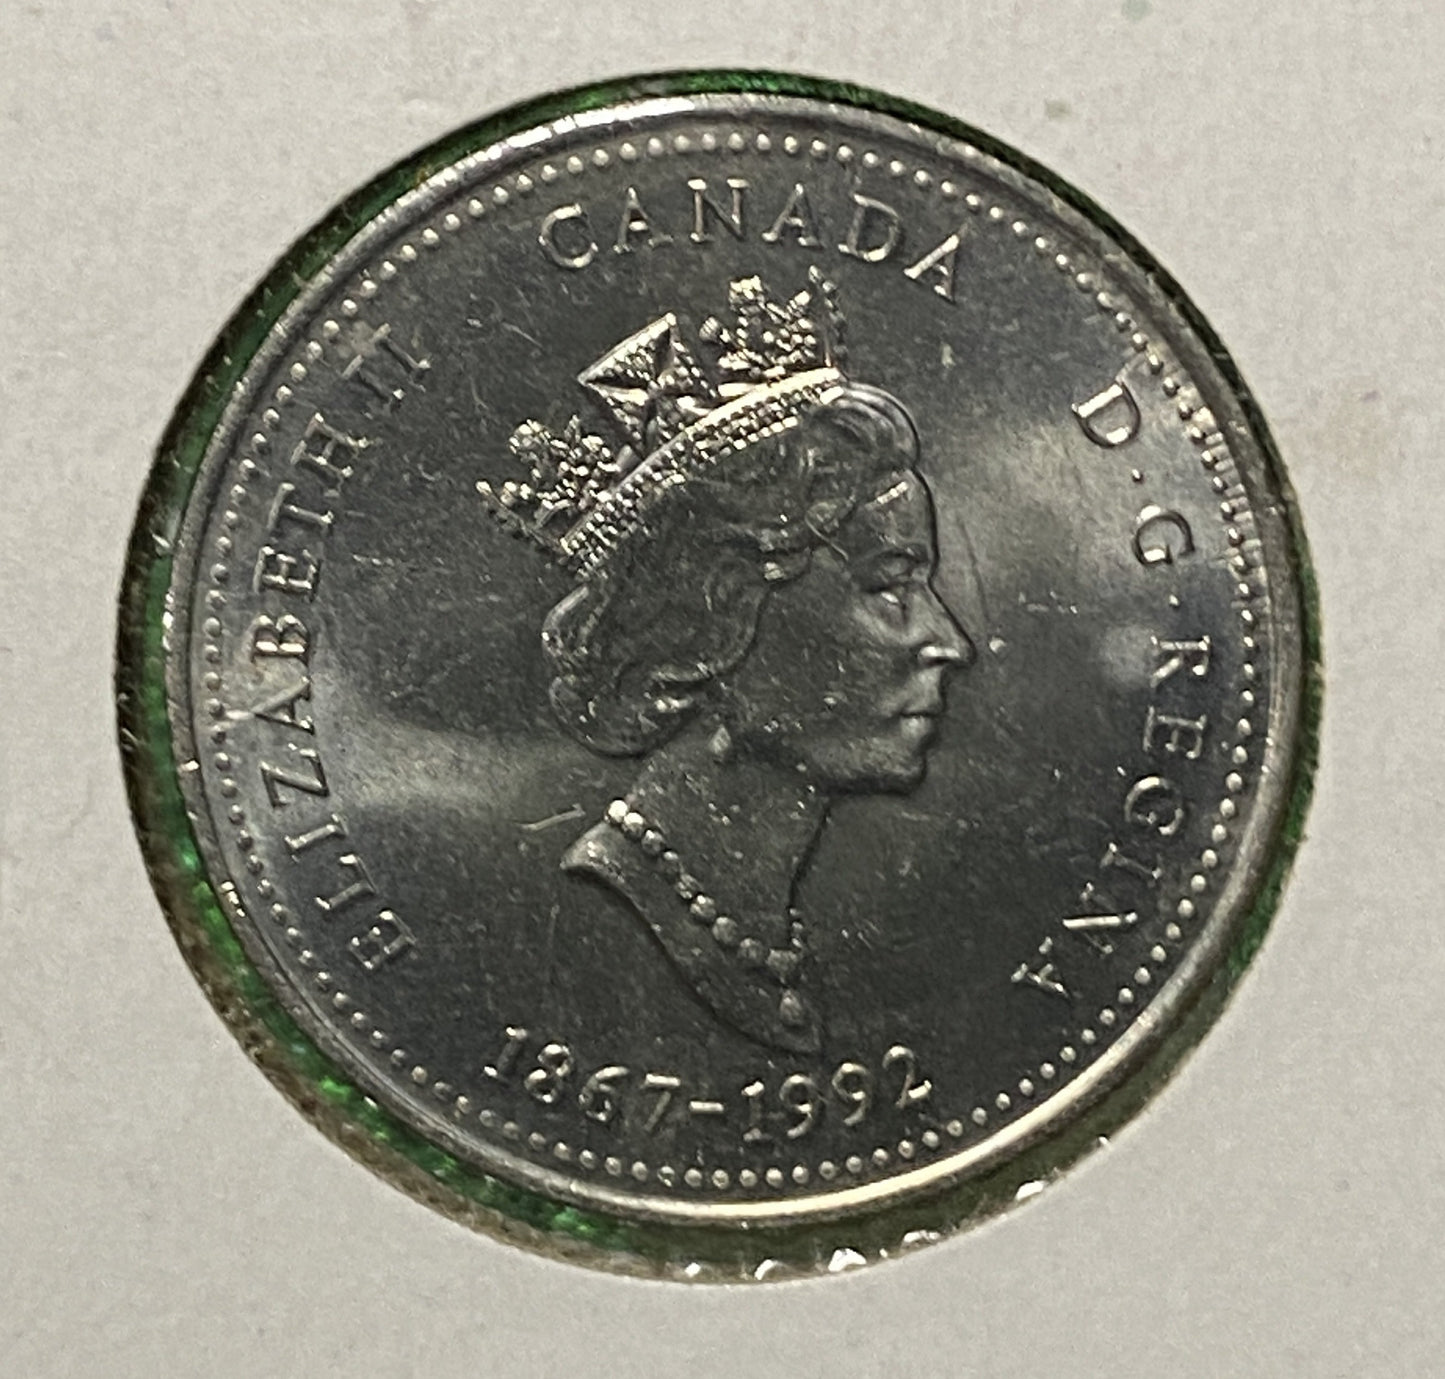 CANADIAN 1992 BRITISH COLUMBIA Queen Elizabeth II  25 CENTS QUARTER COIN AU / UNC CONDITION